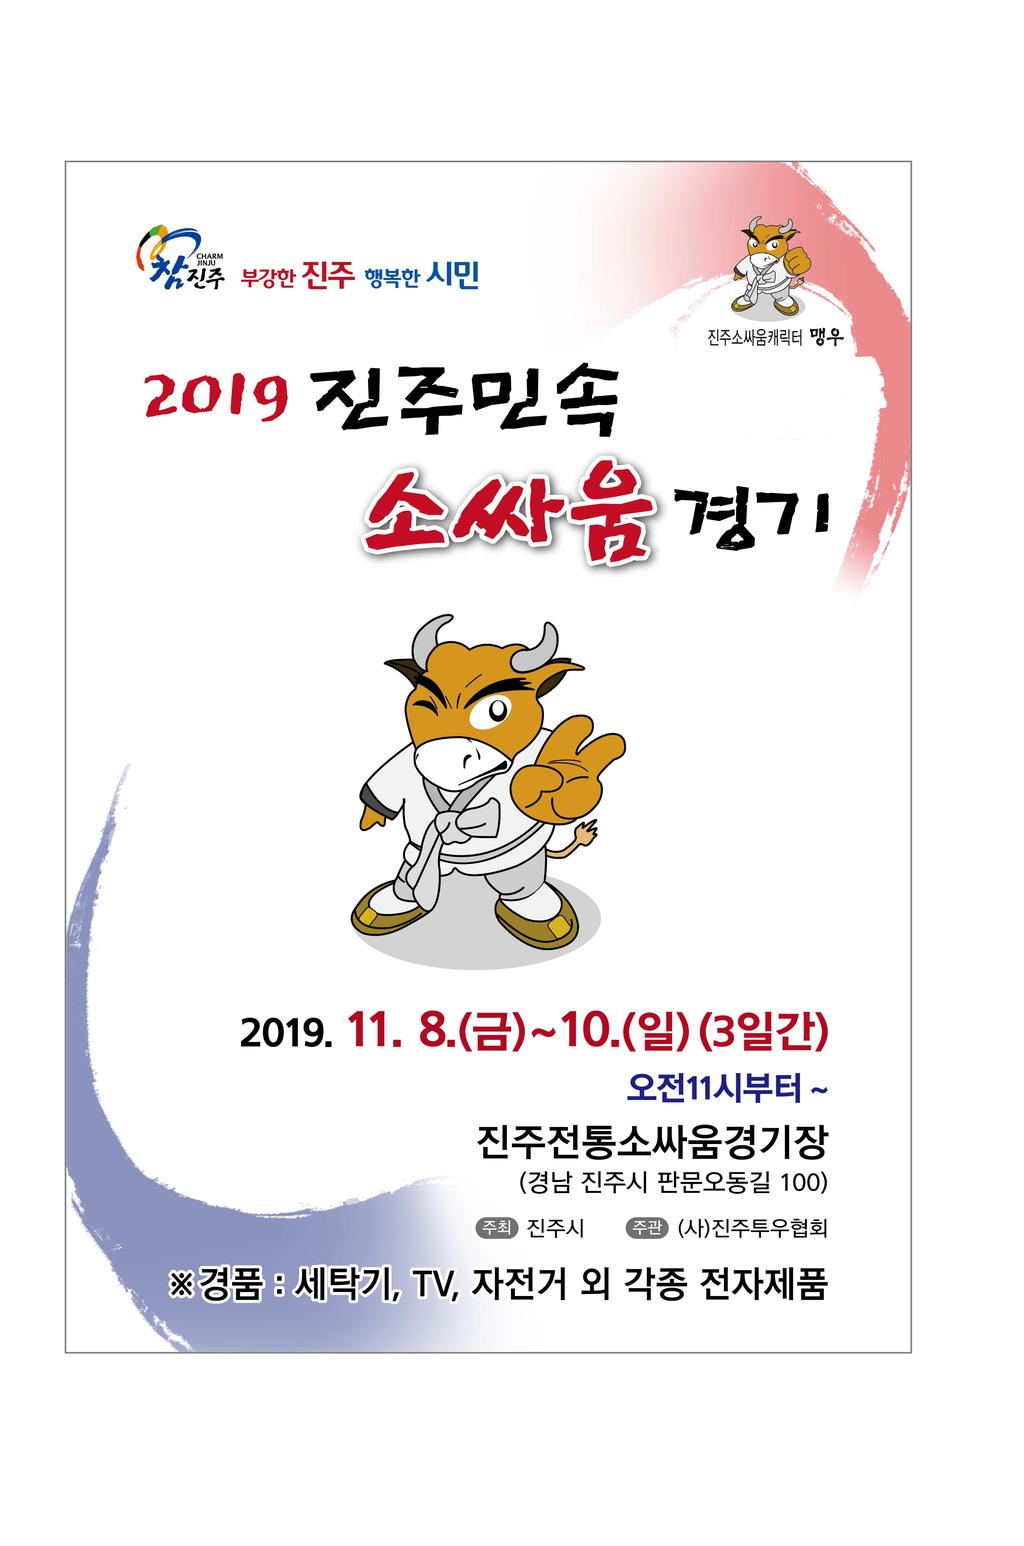 2019년 진주민속소싸움경기  안내문